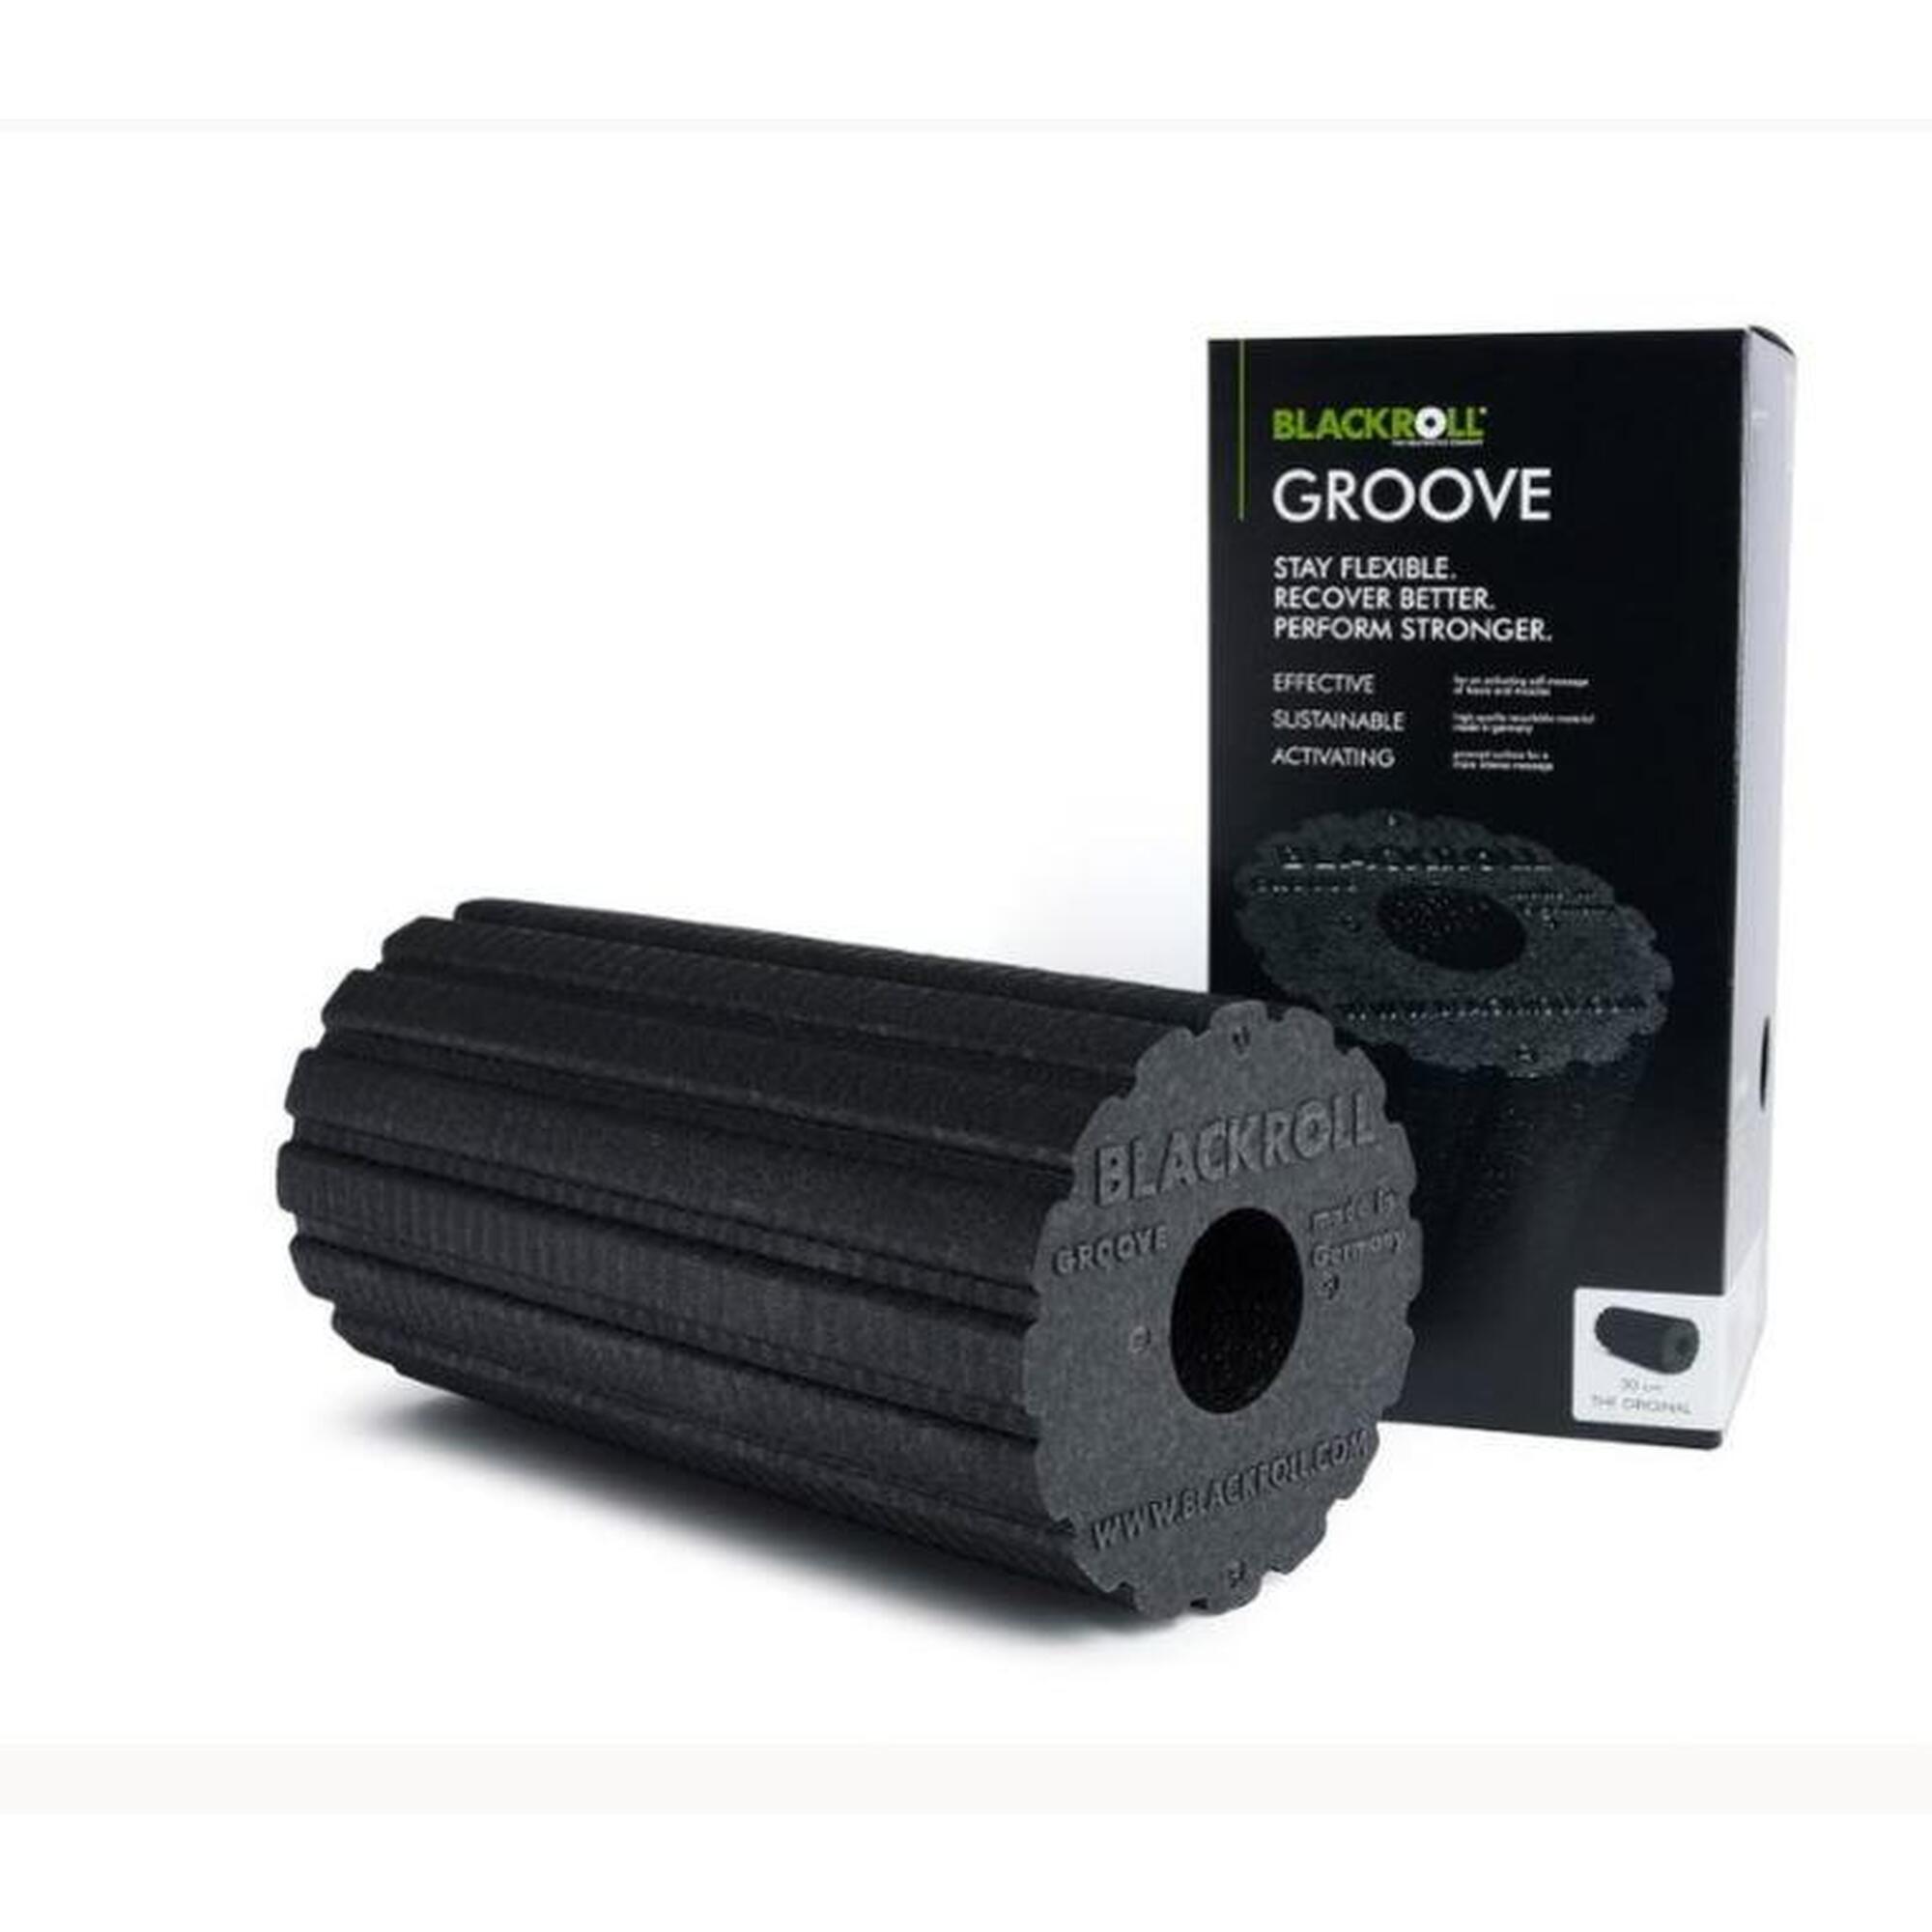 BLACKROLL® GROOVE STANDARD Foam Roller black